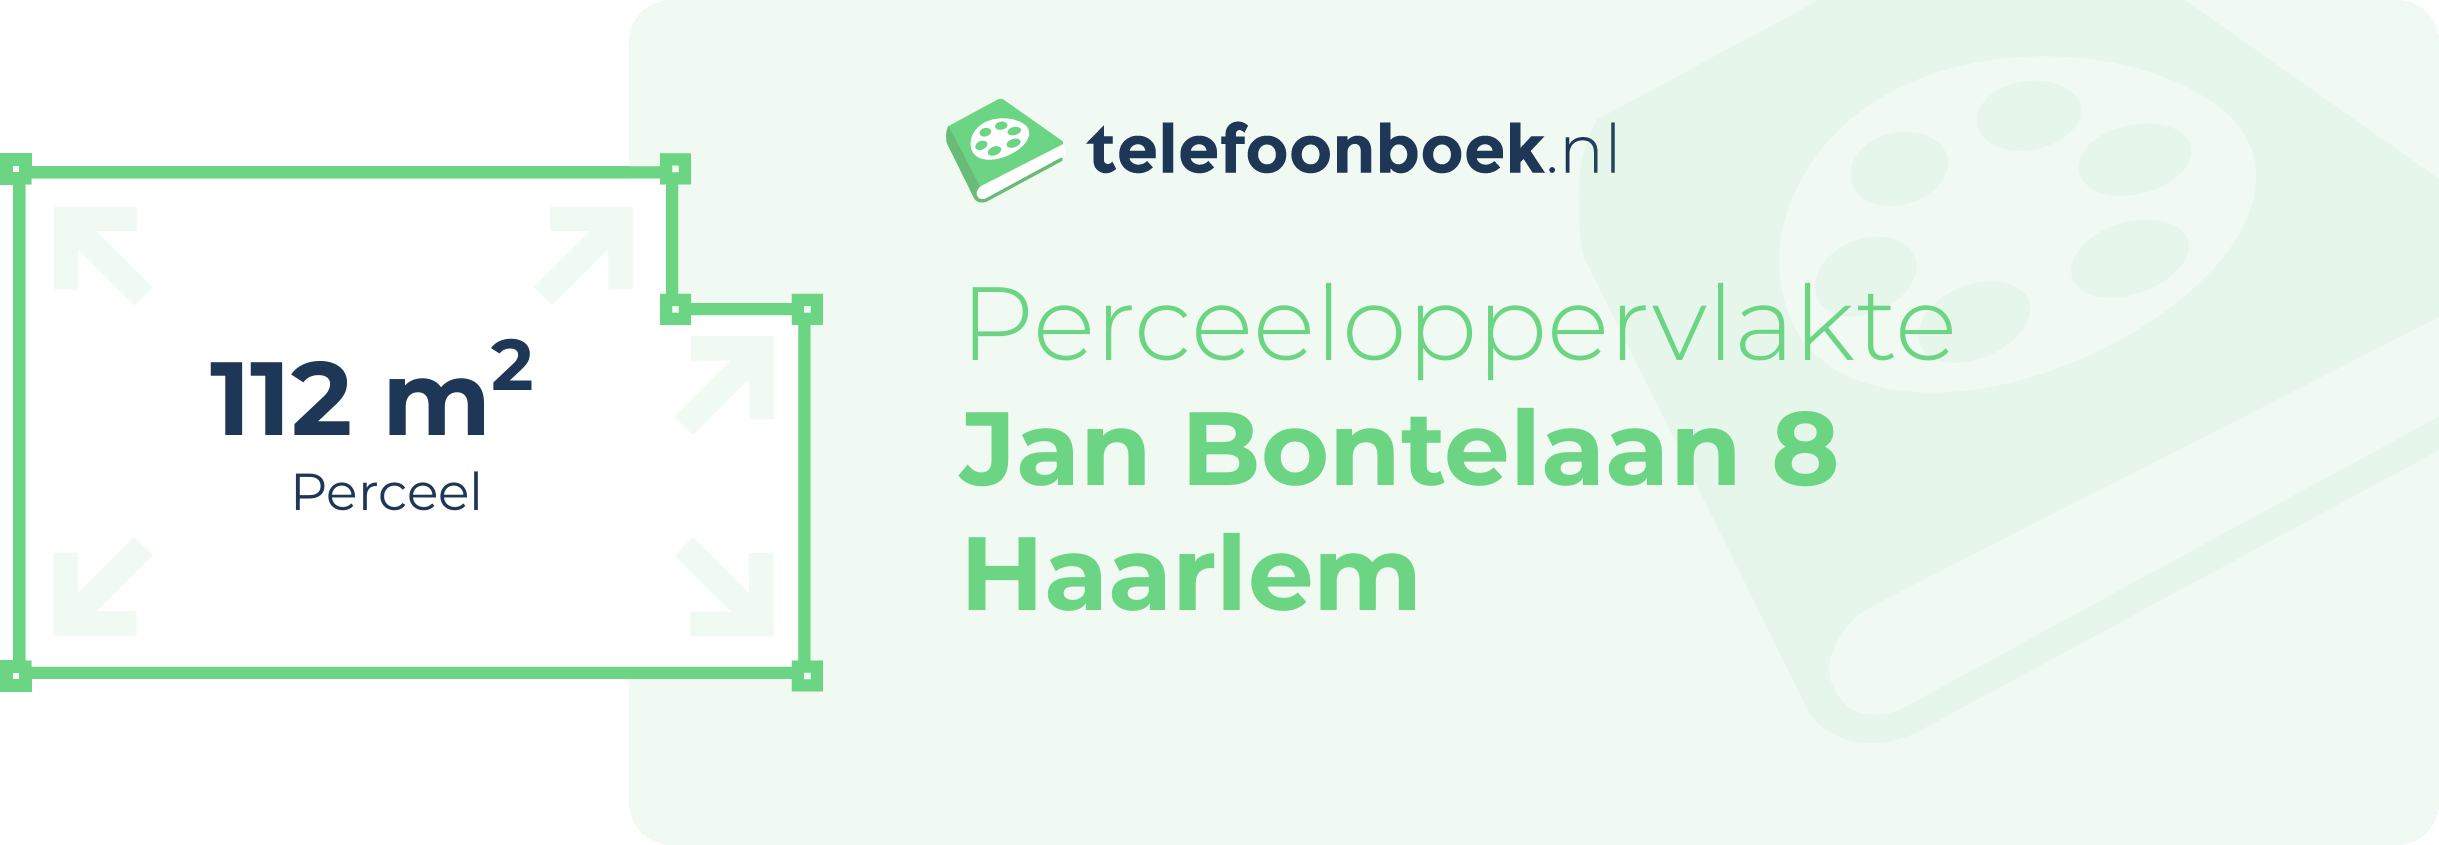 Perceeloppervlakte Jan Bontelaan 8 Haarlem